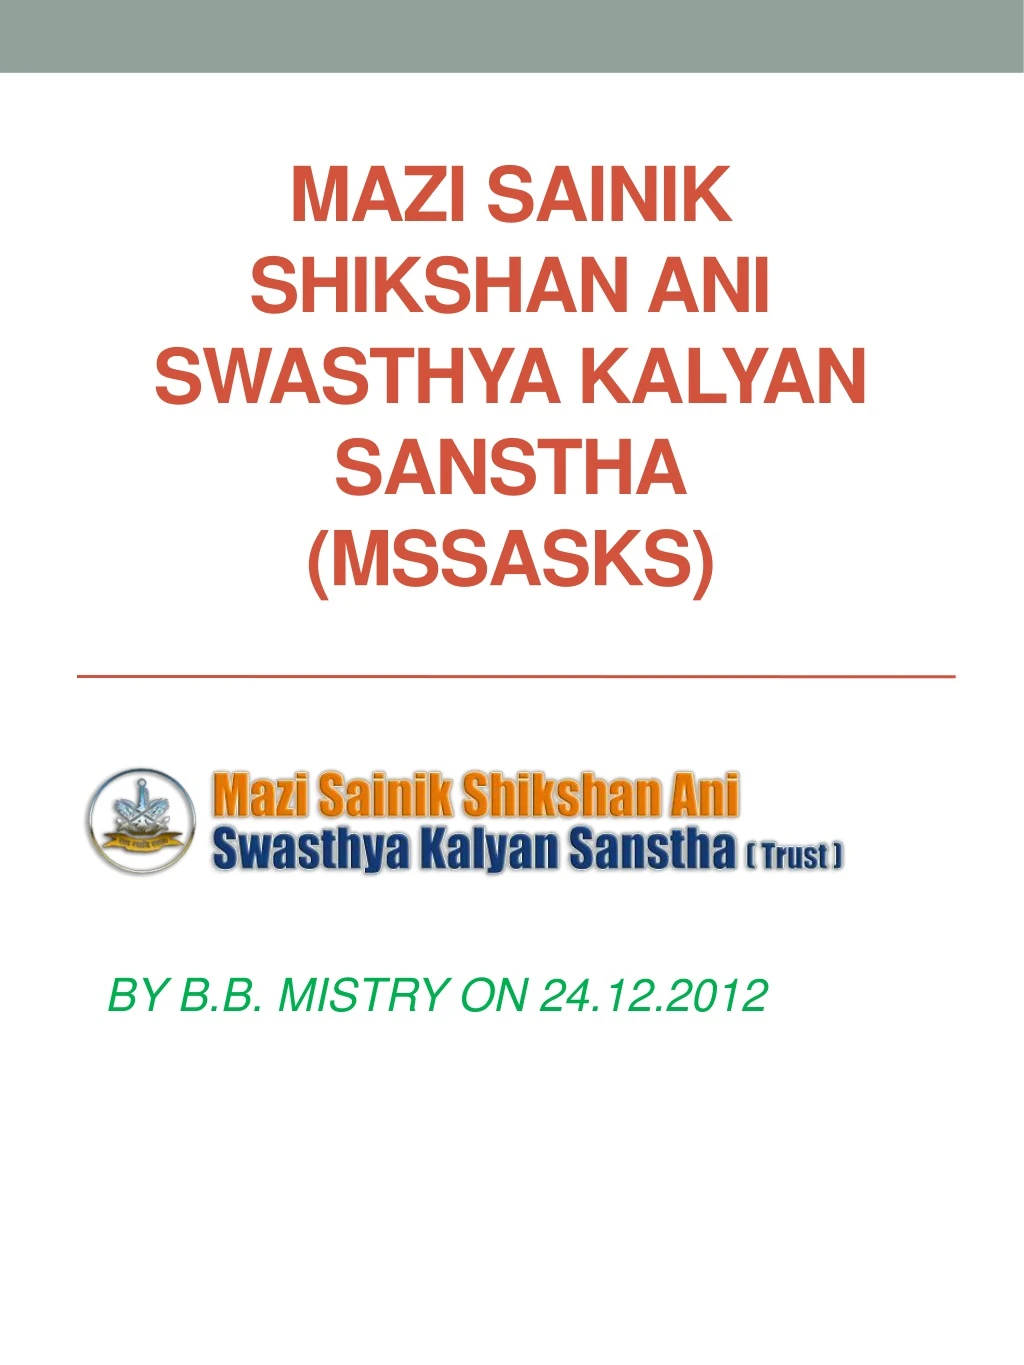 mazi sainik shikshan ani swasthya kalyan sanstha mssasks